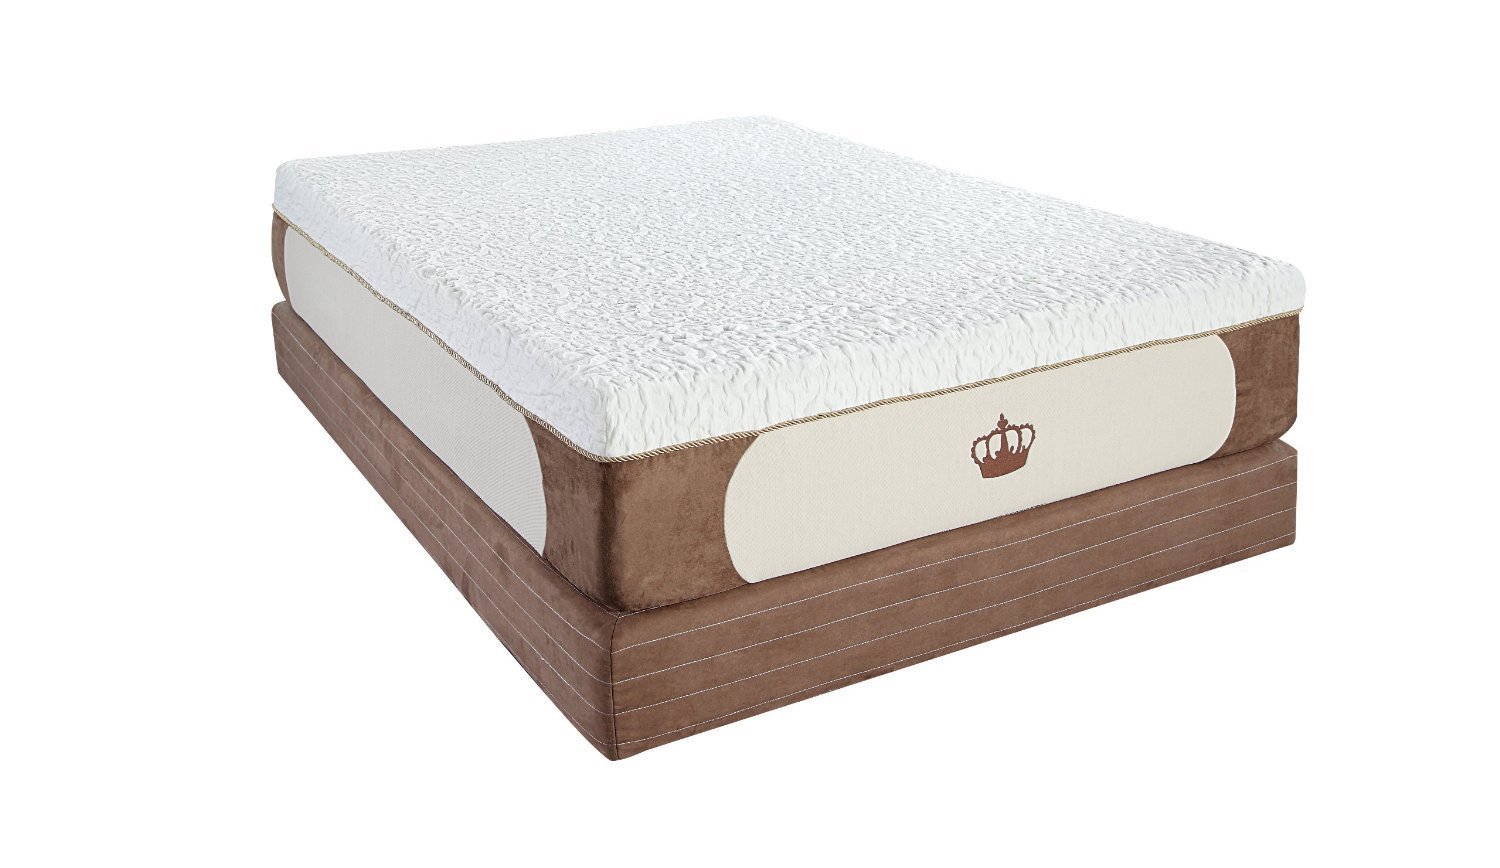 mattress firm memory foam pillow